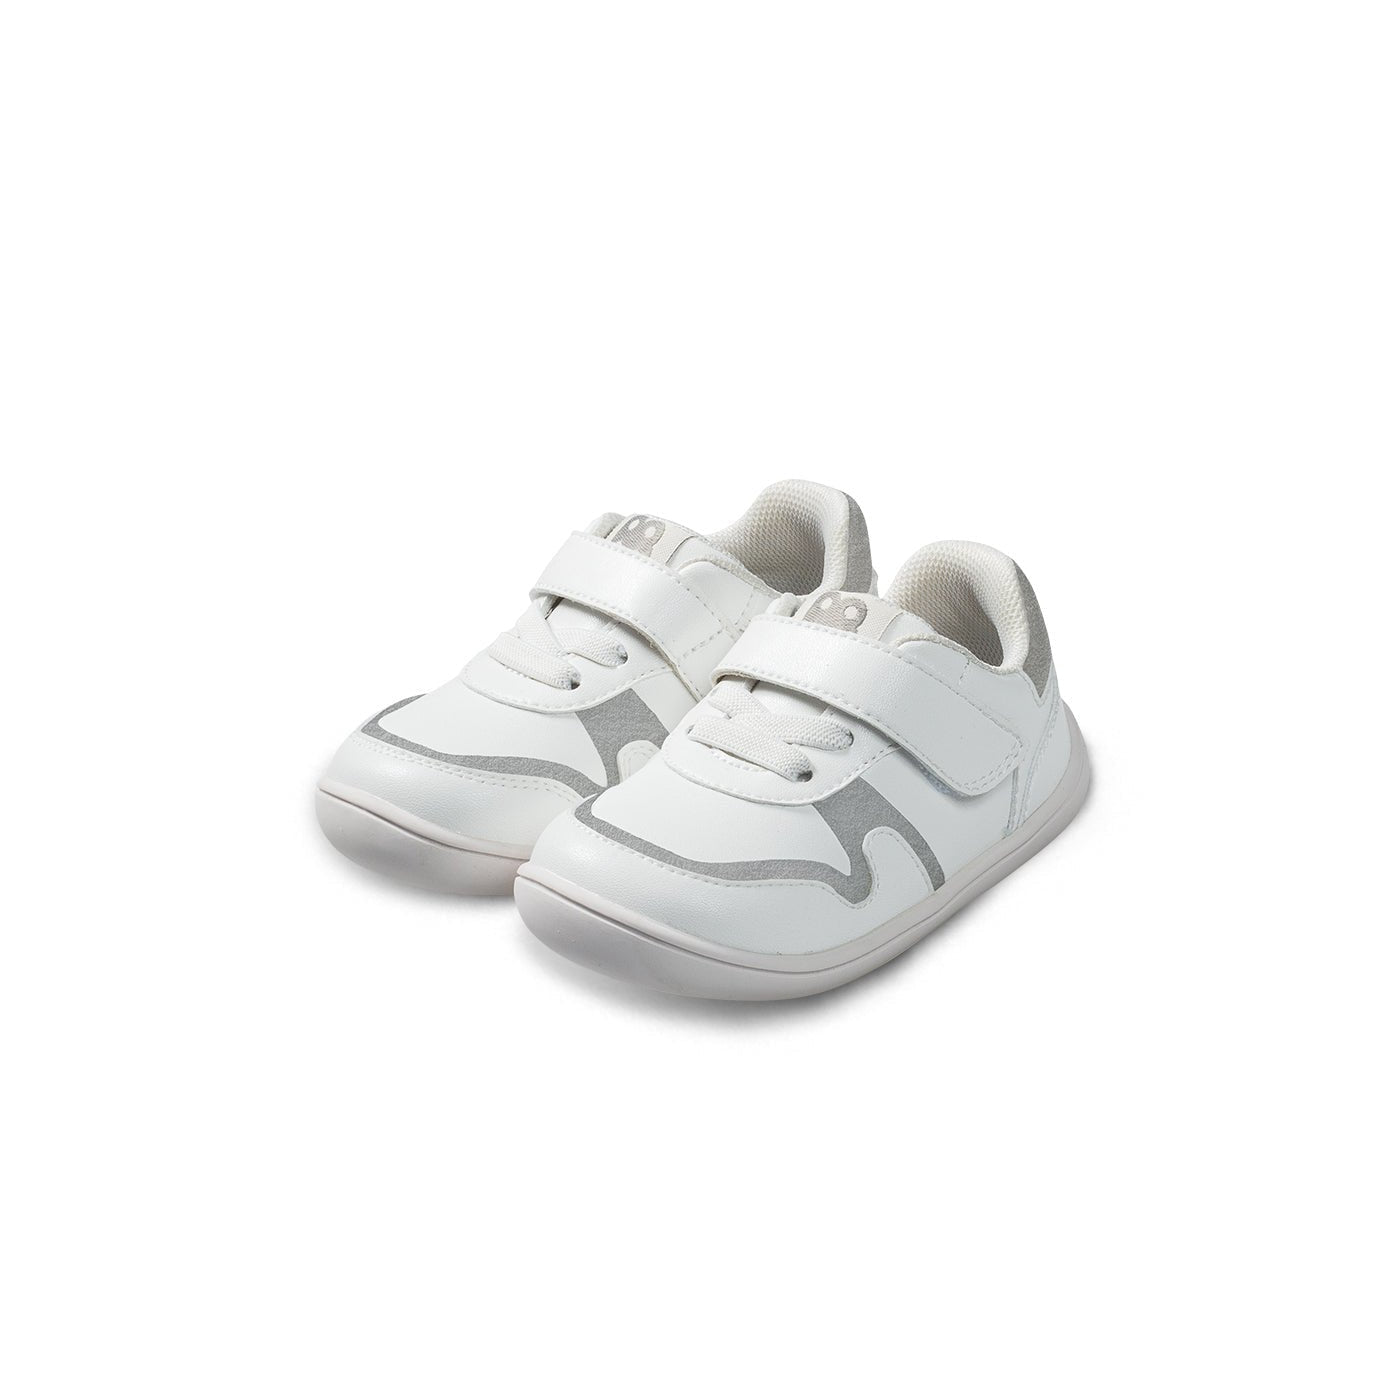 HopHop Soft Sole Anti-slip Pre-walker White Baby Sneakers - 0cm